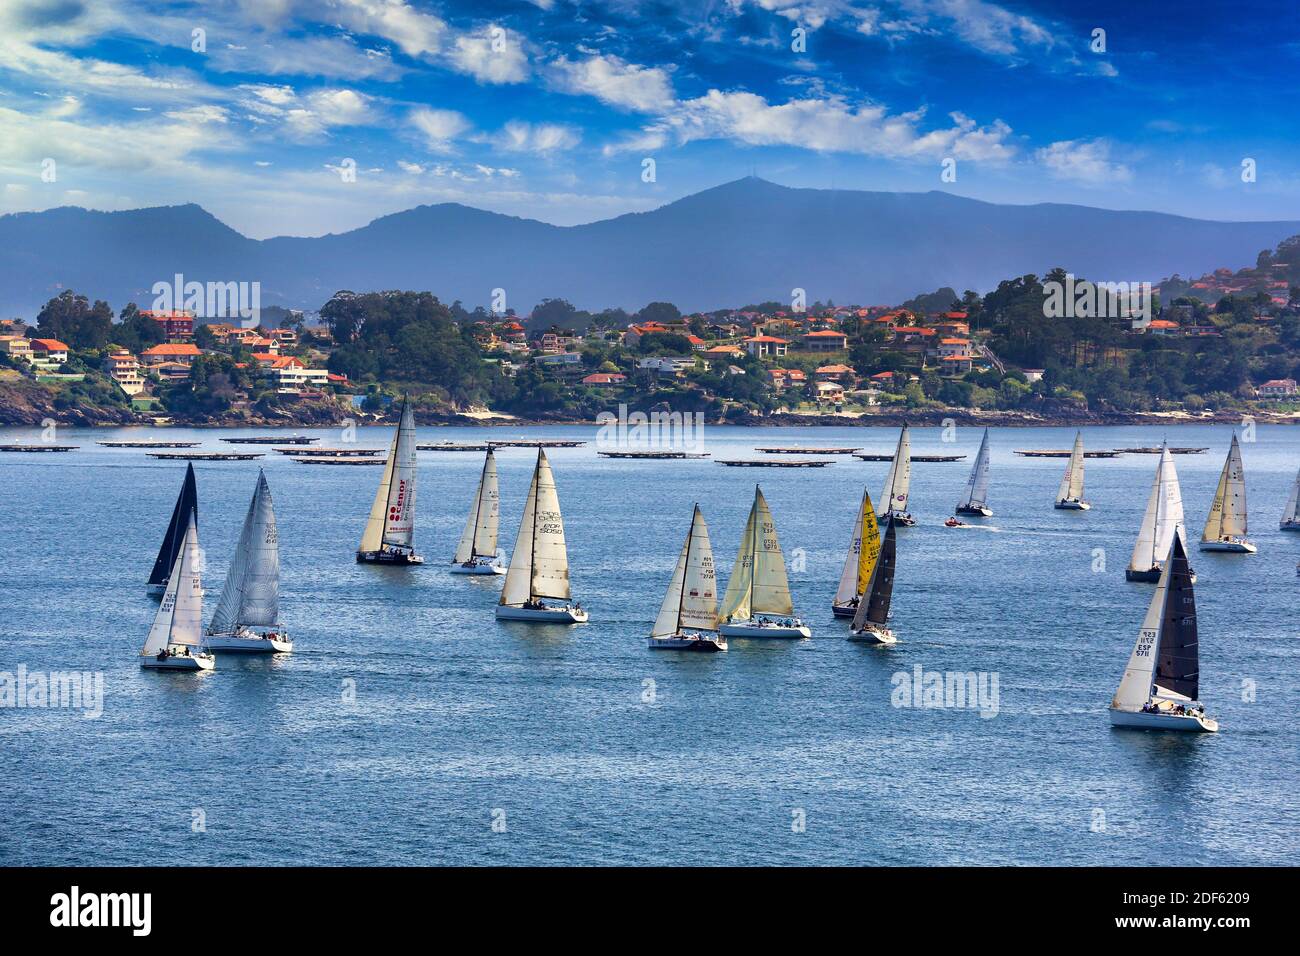 Sailboats in the Ria de Vigo, View from Baiona, Pontevedra, Galicia, Spain Stock Photo